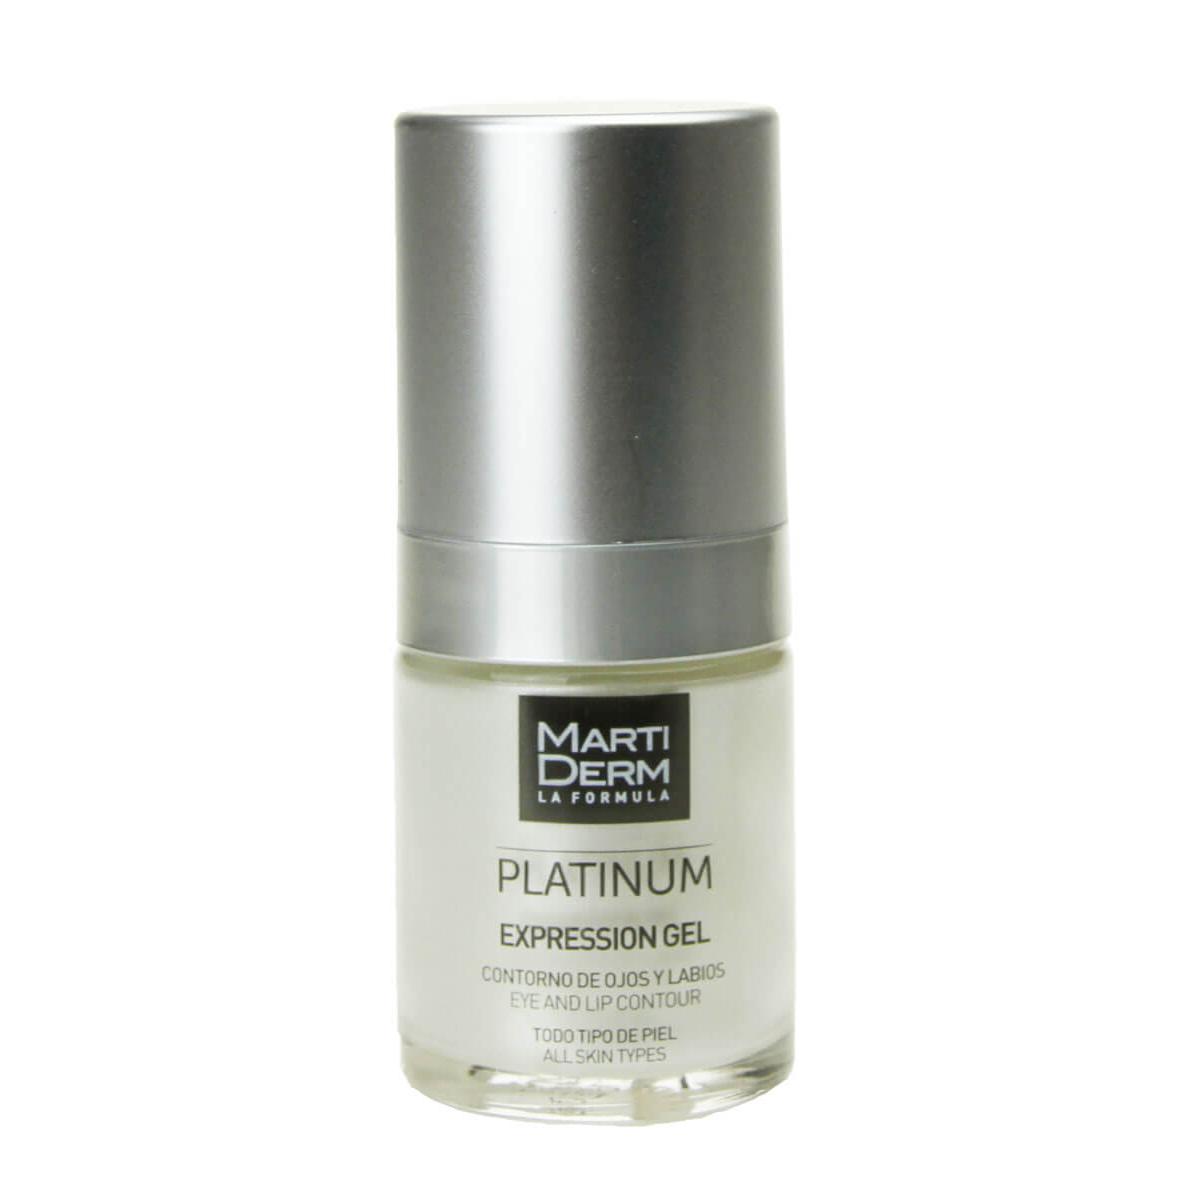 Martiderm - Martiderm ® platinum expression gel contorno de ojos y labios 15 ml